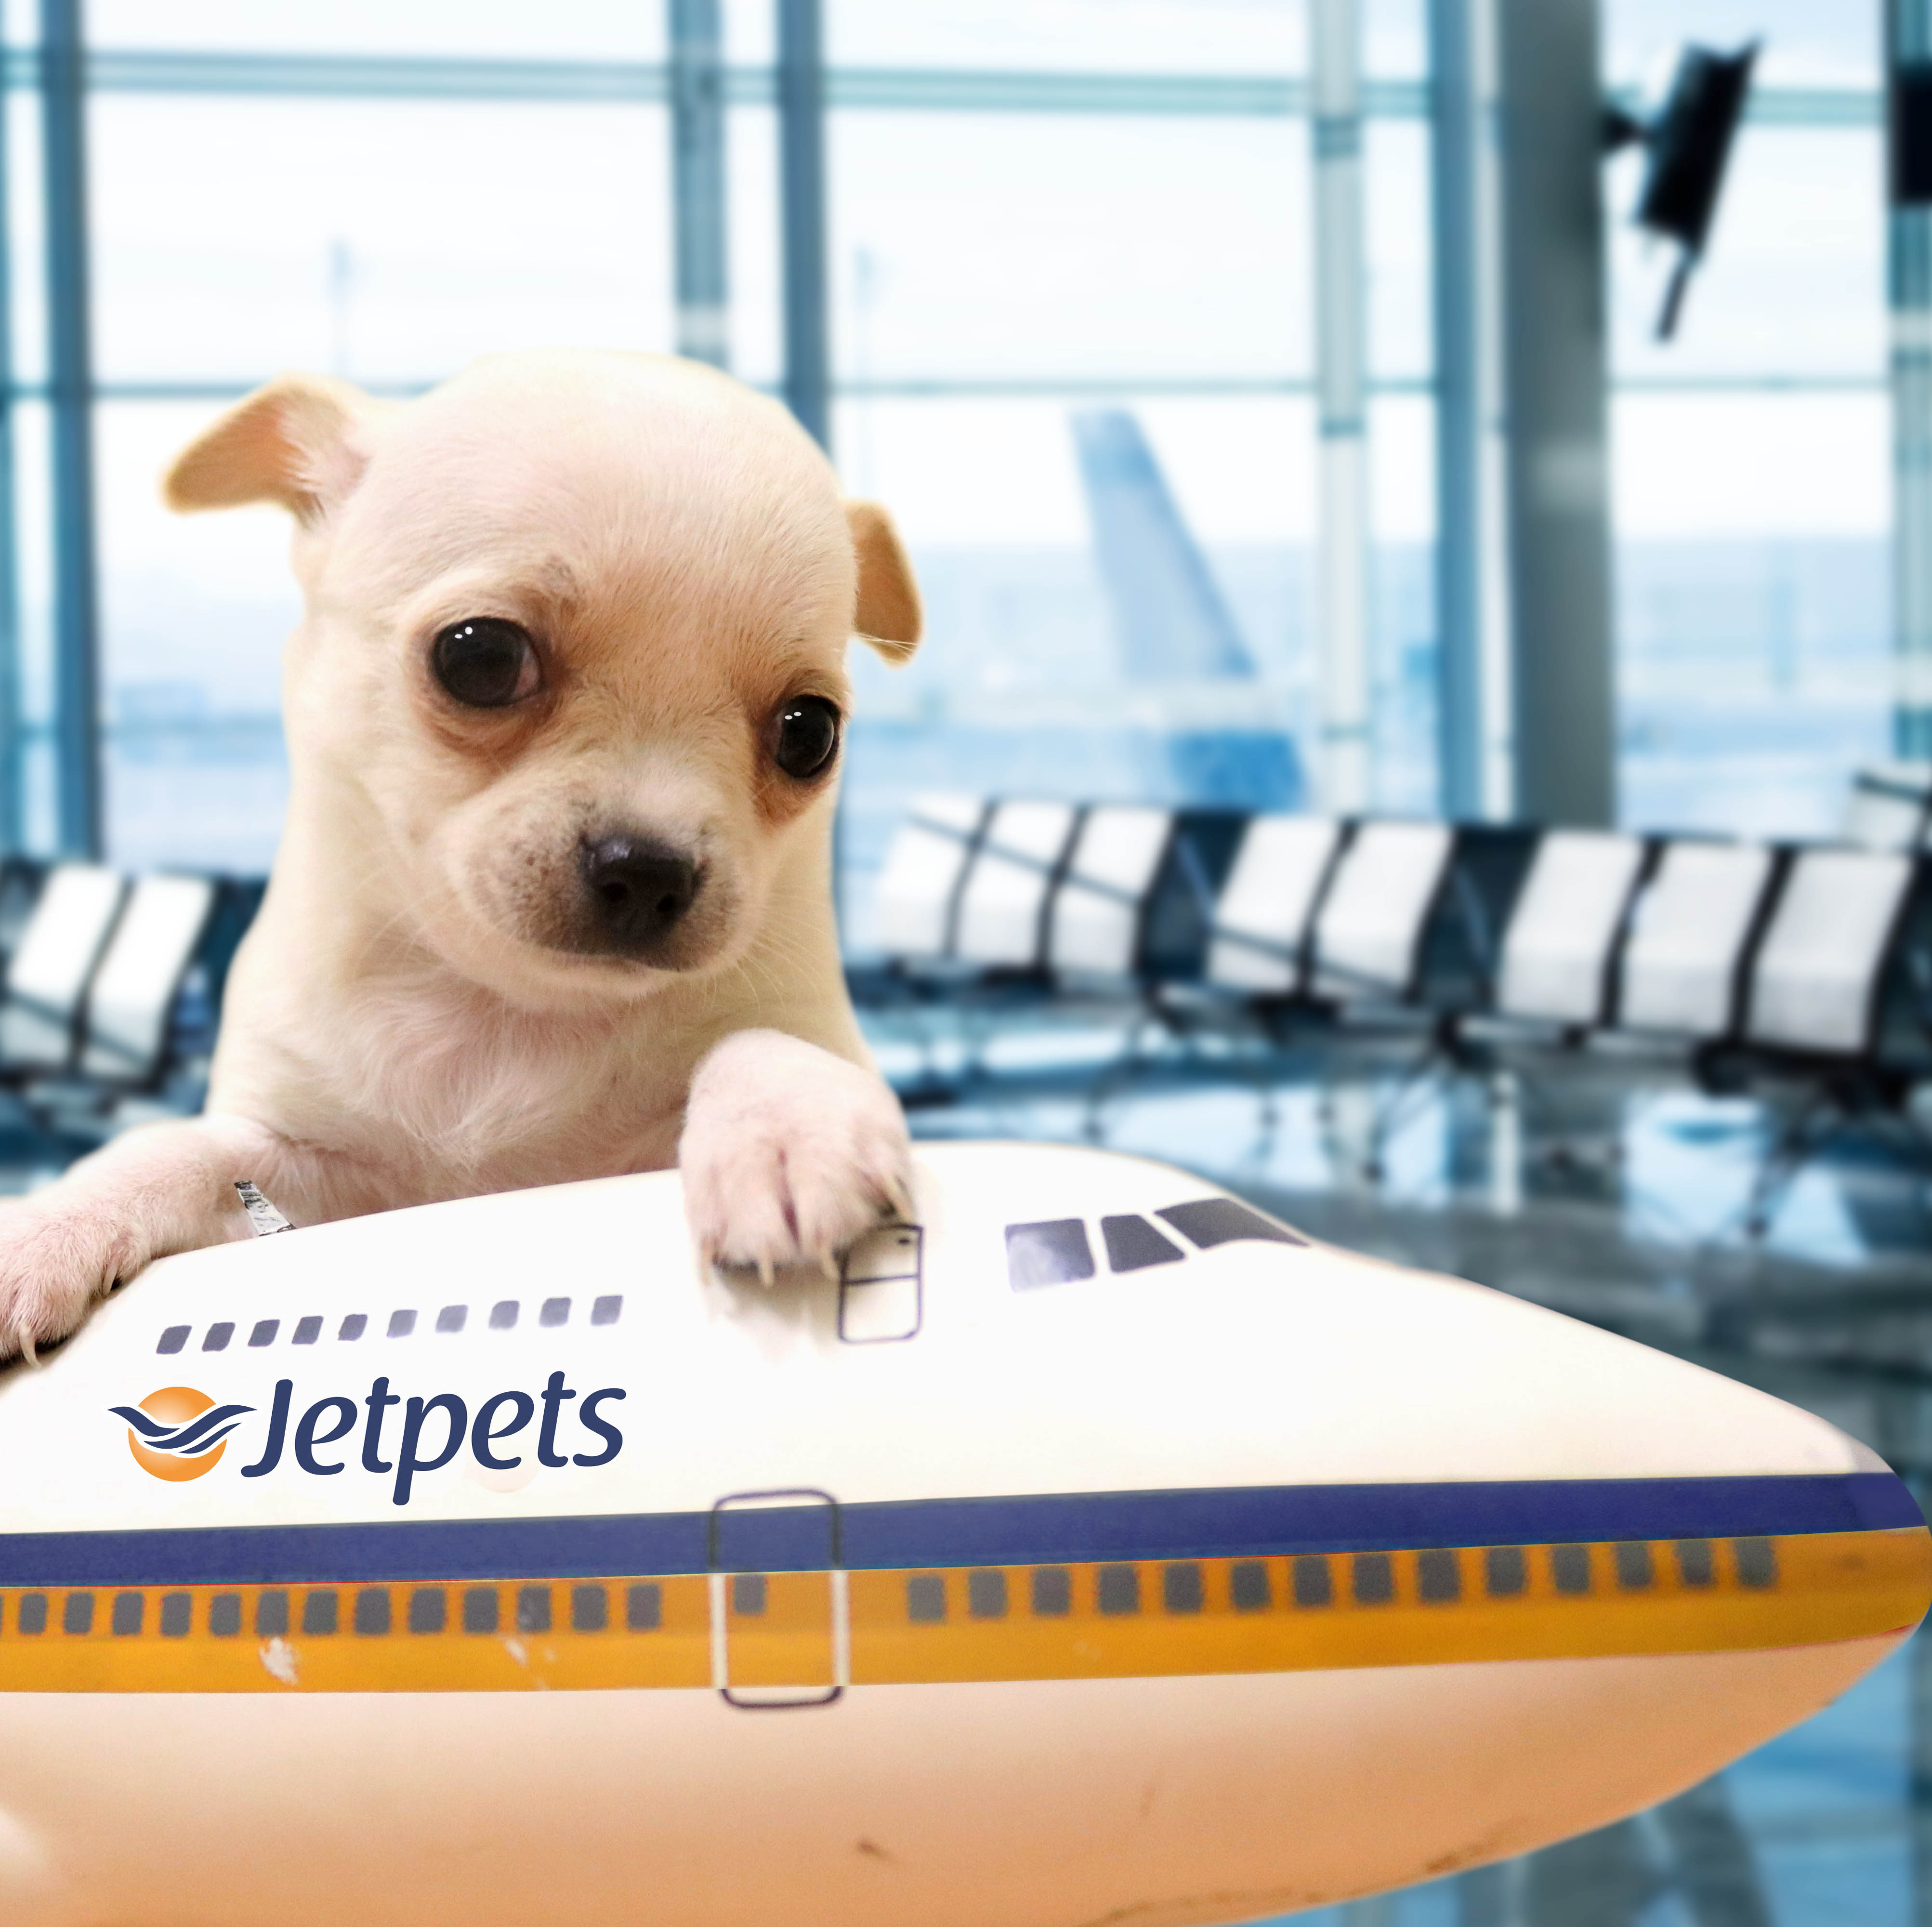 Jetpets Happy Travellers Jetpets AU Pet Travel Consultants